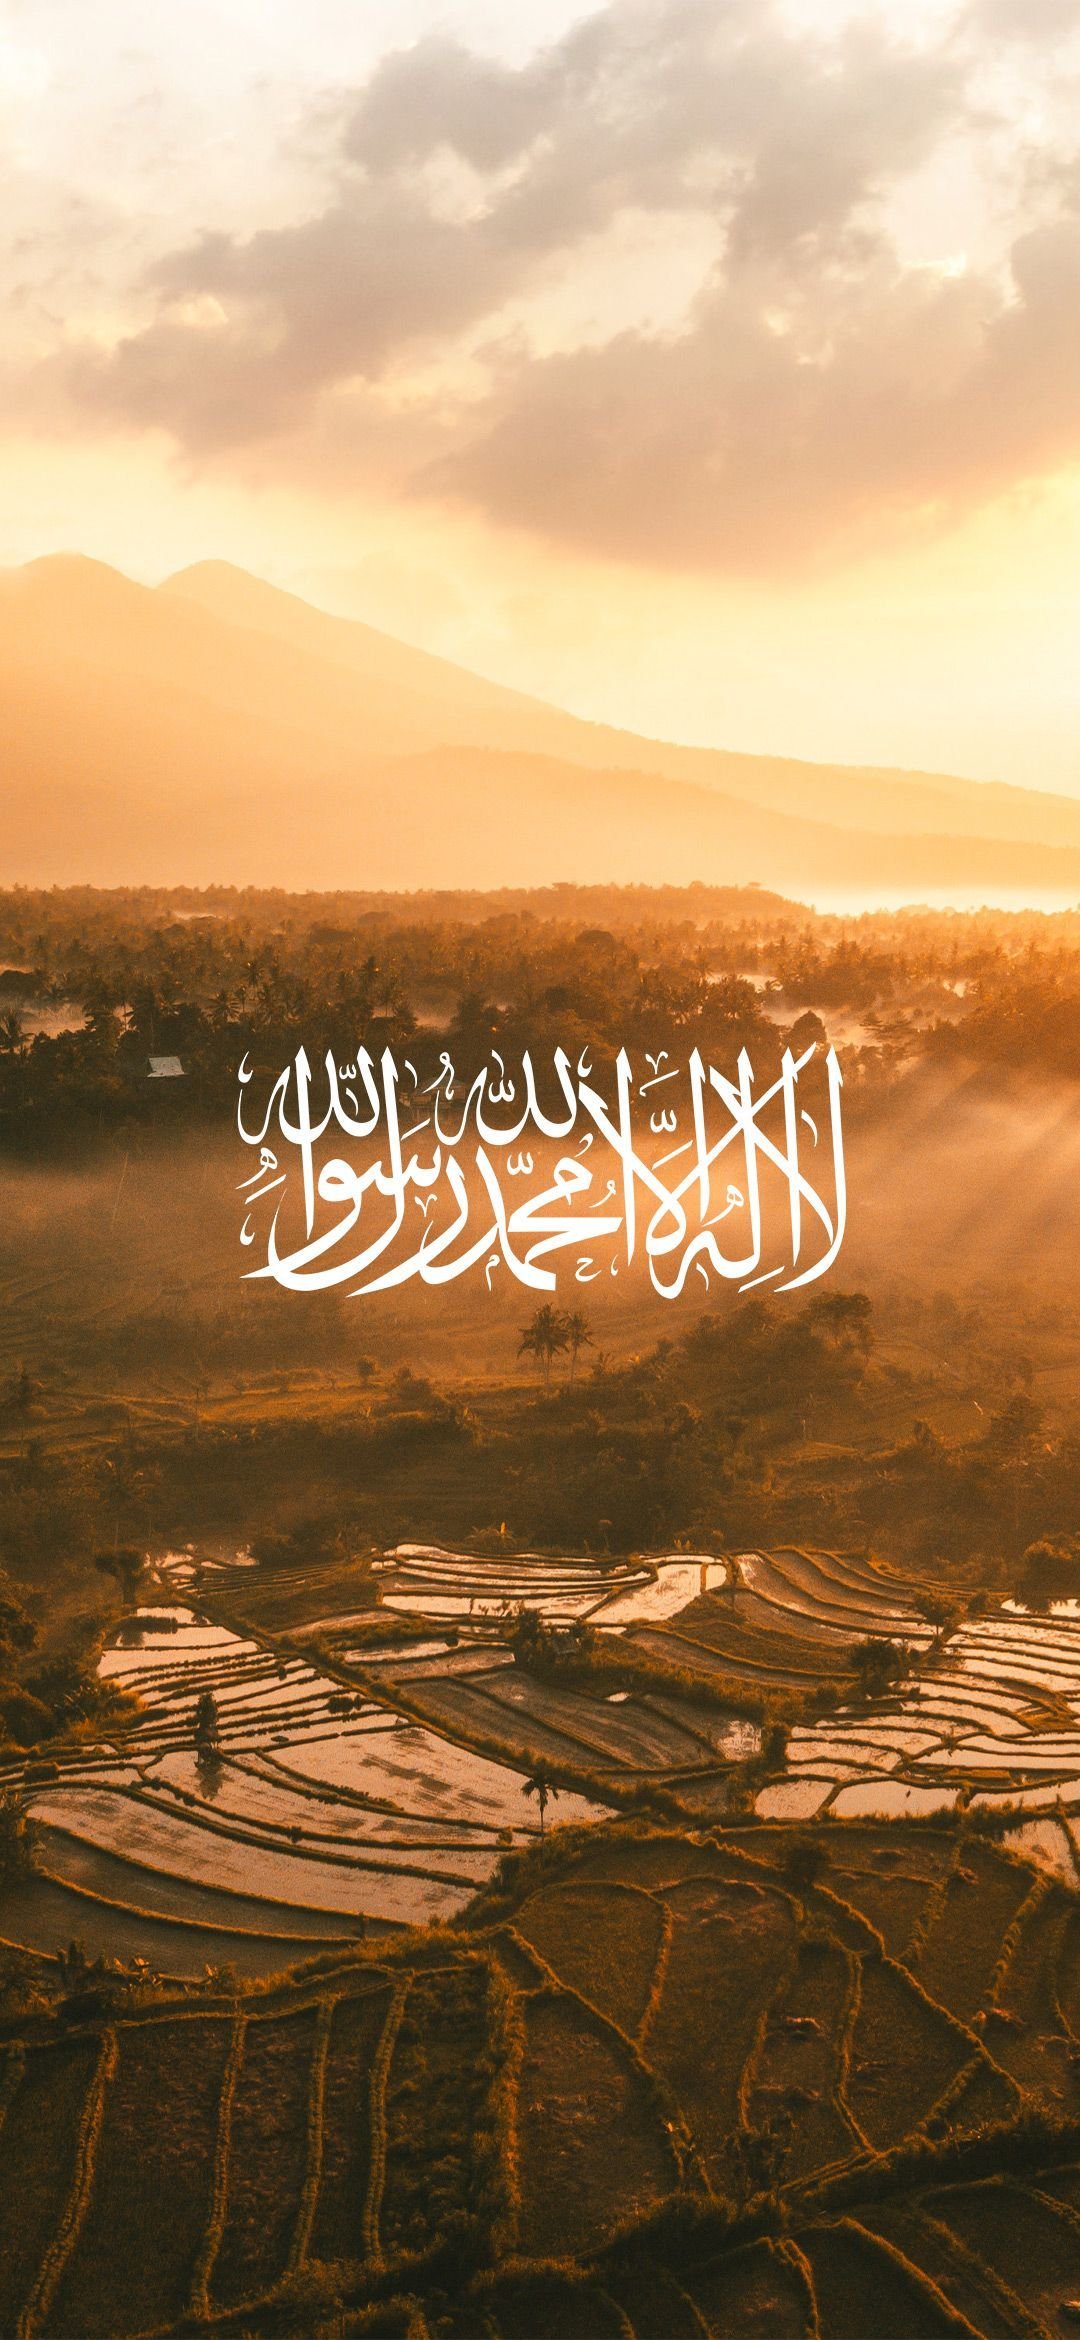 23 Quran Verses Wallpapers  WallpaperSafari